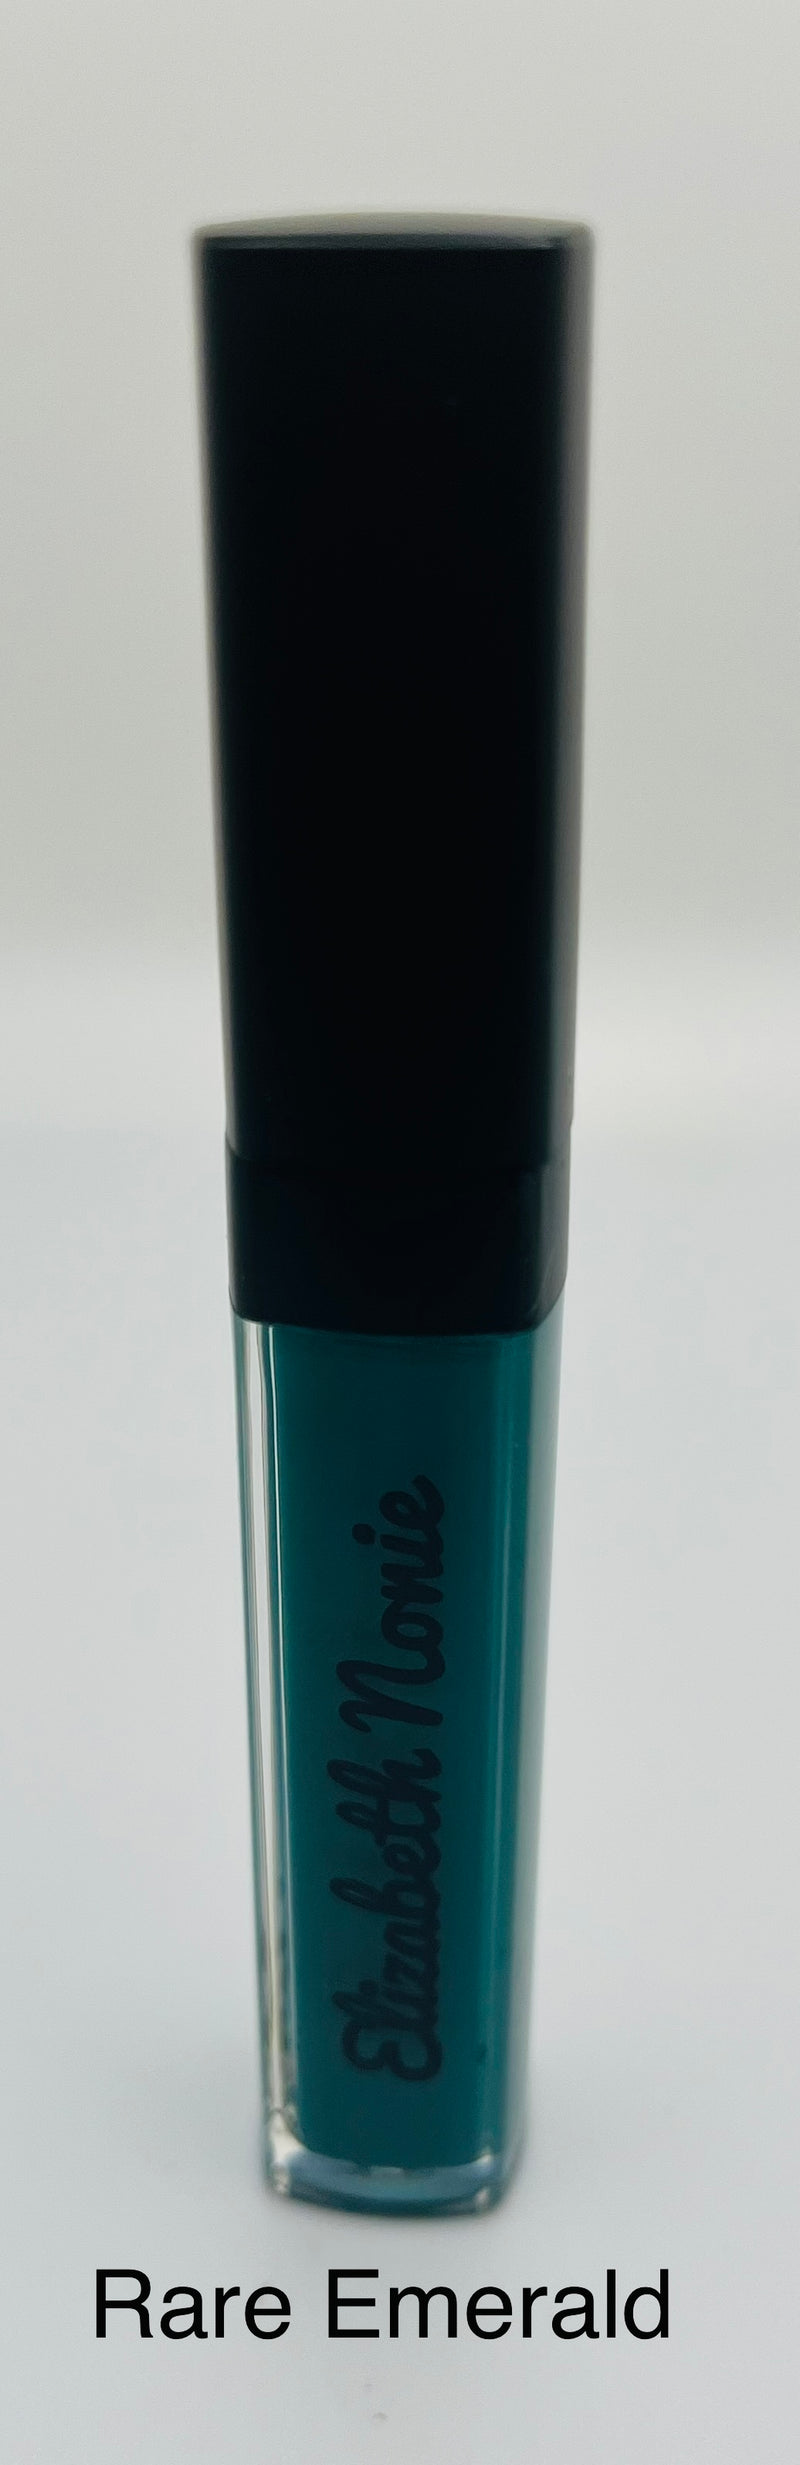 Rare Emerald Matte Liquid Lipstick